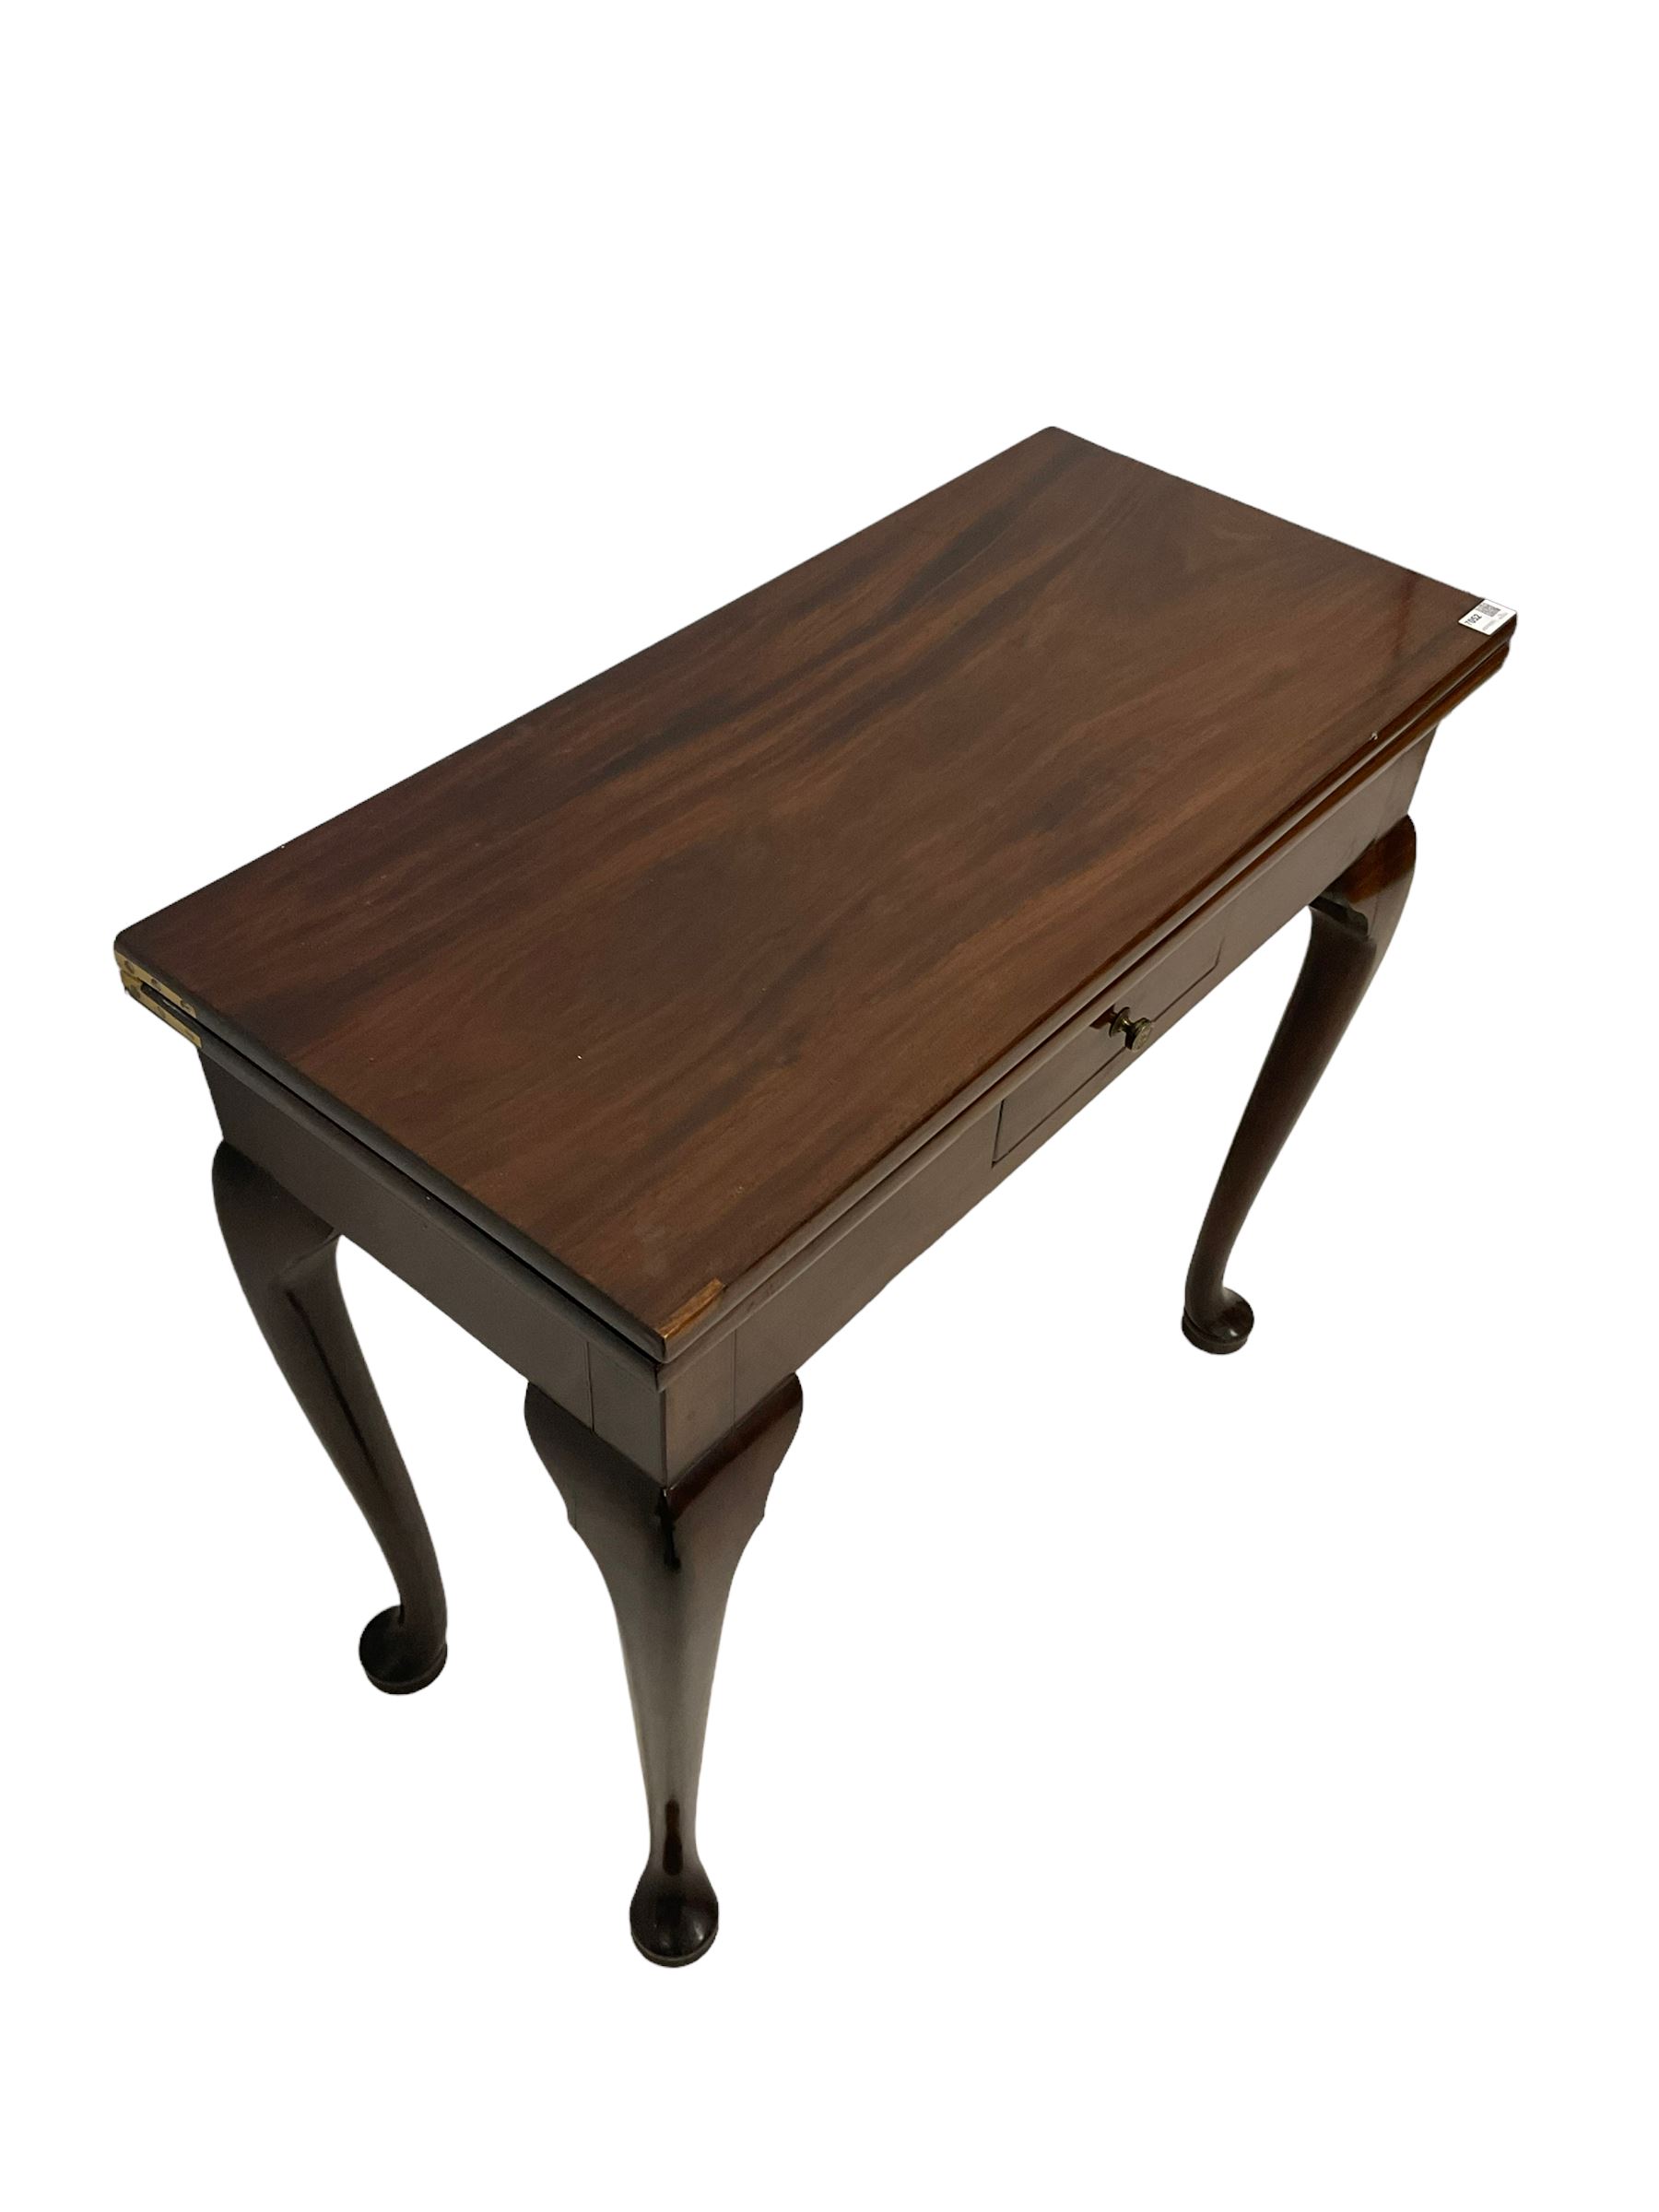 George III mahogany tea table - Image 4 of 7